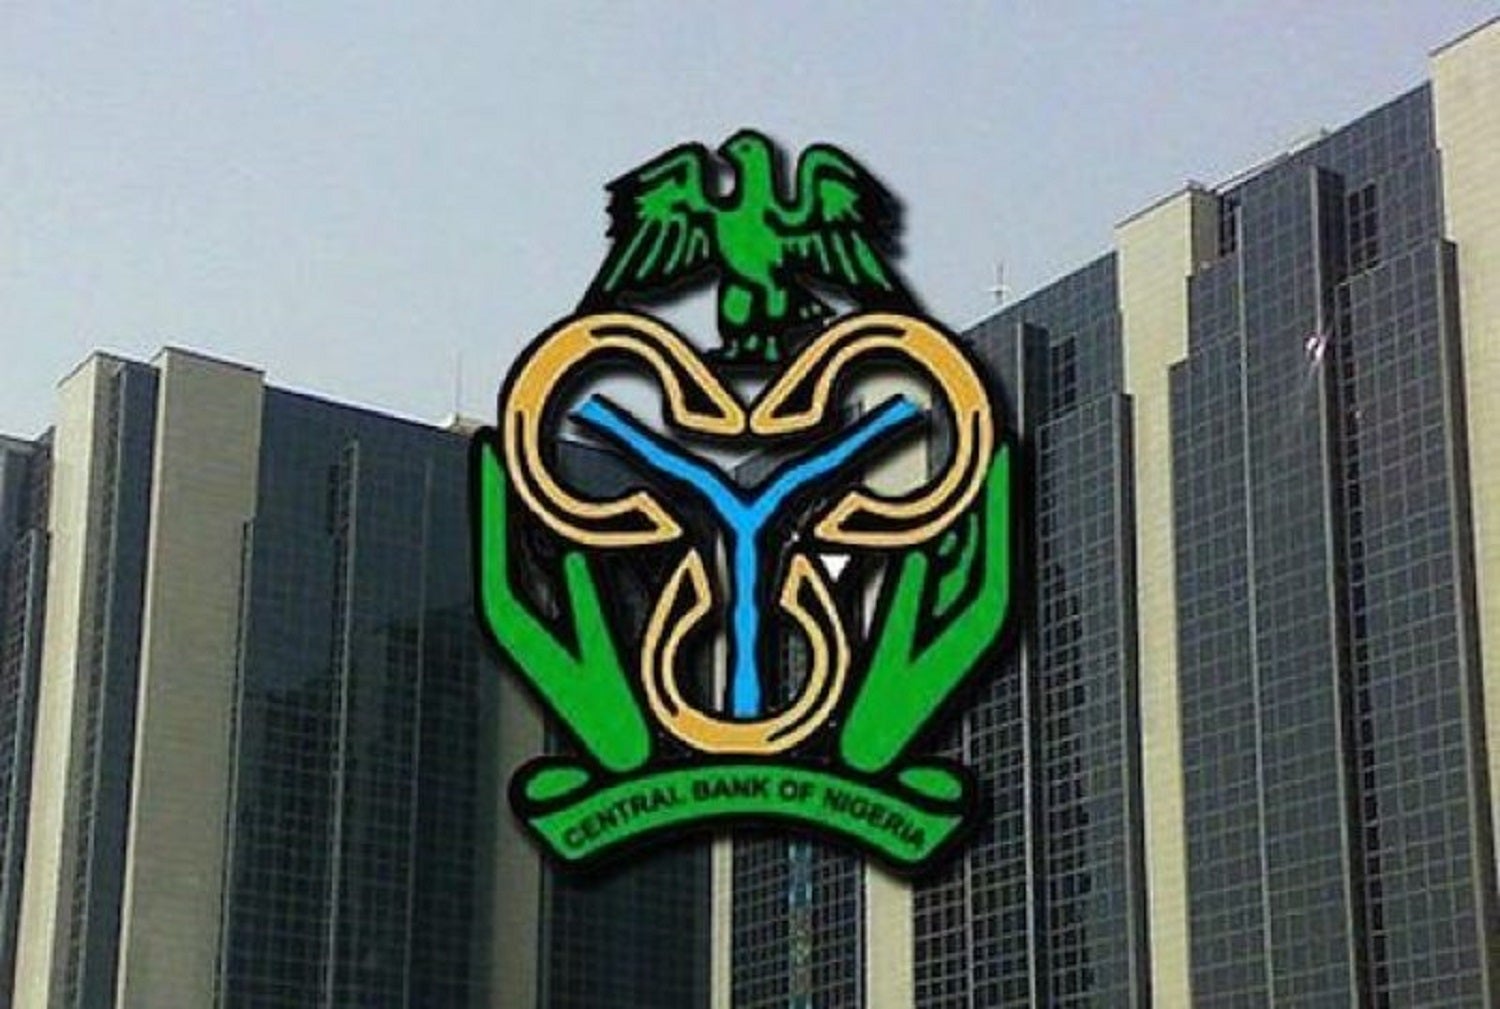 Central bank announces reliefs on OFI loans